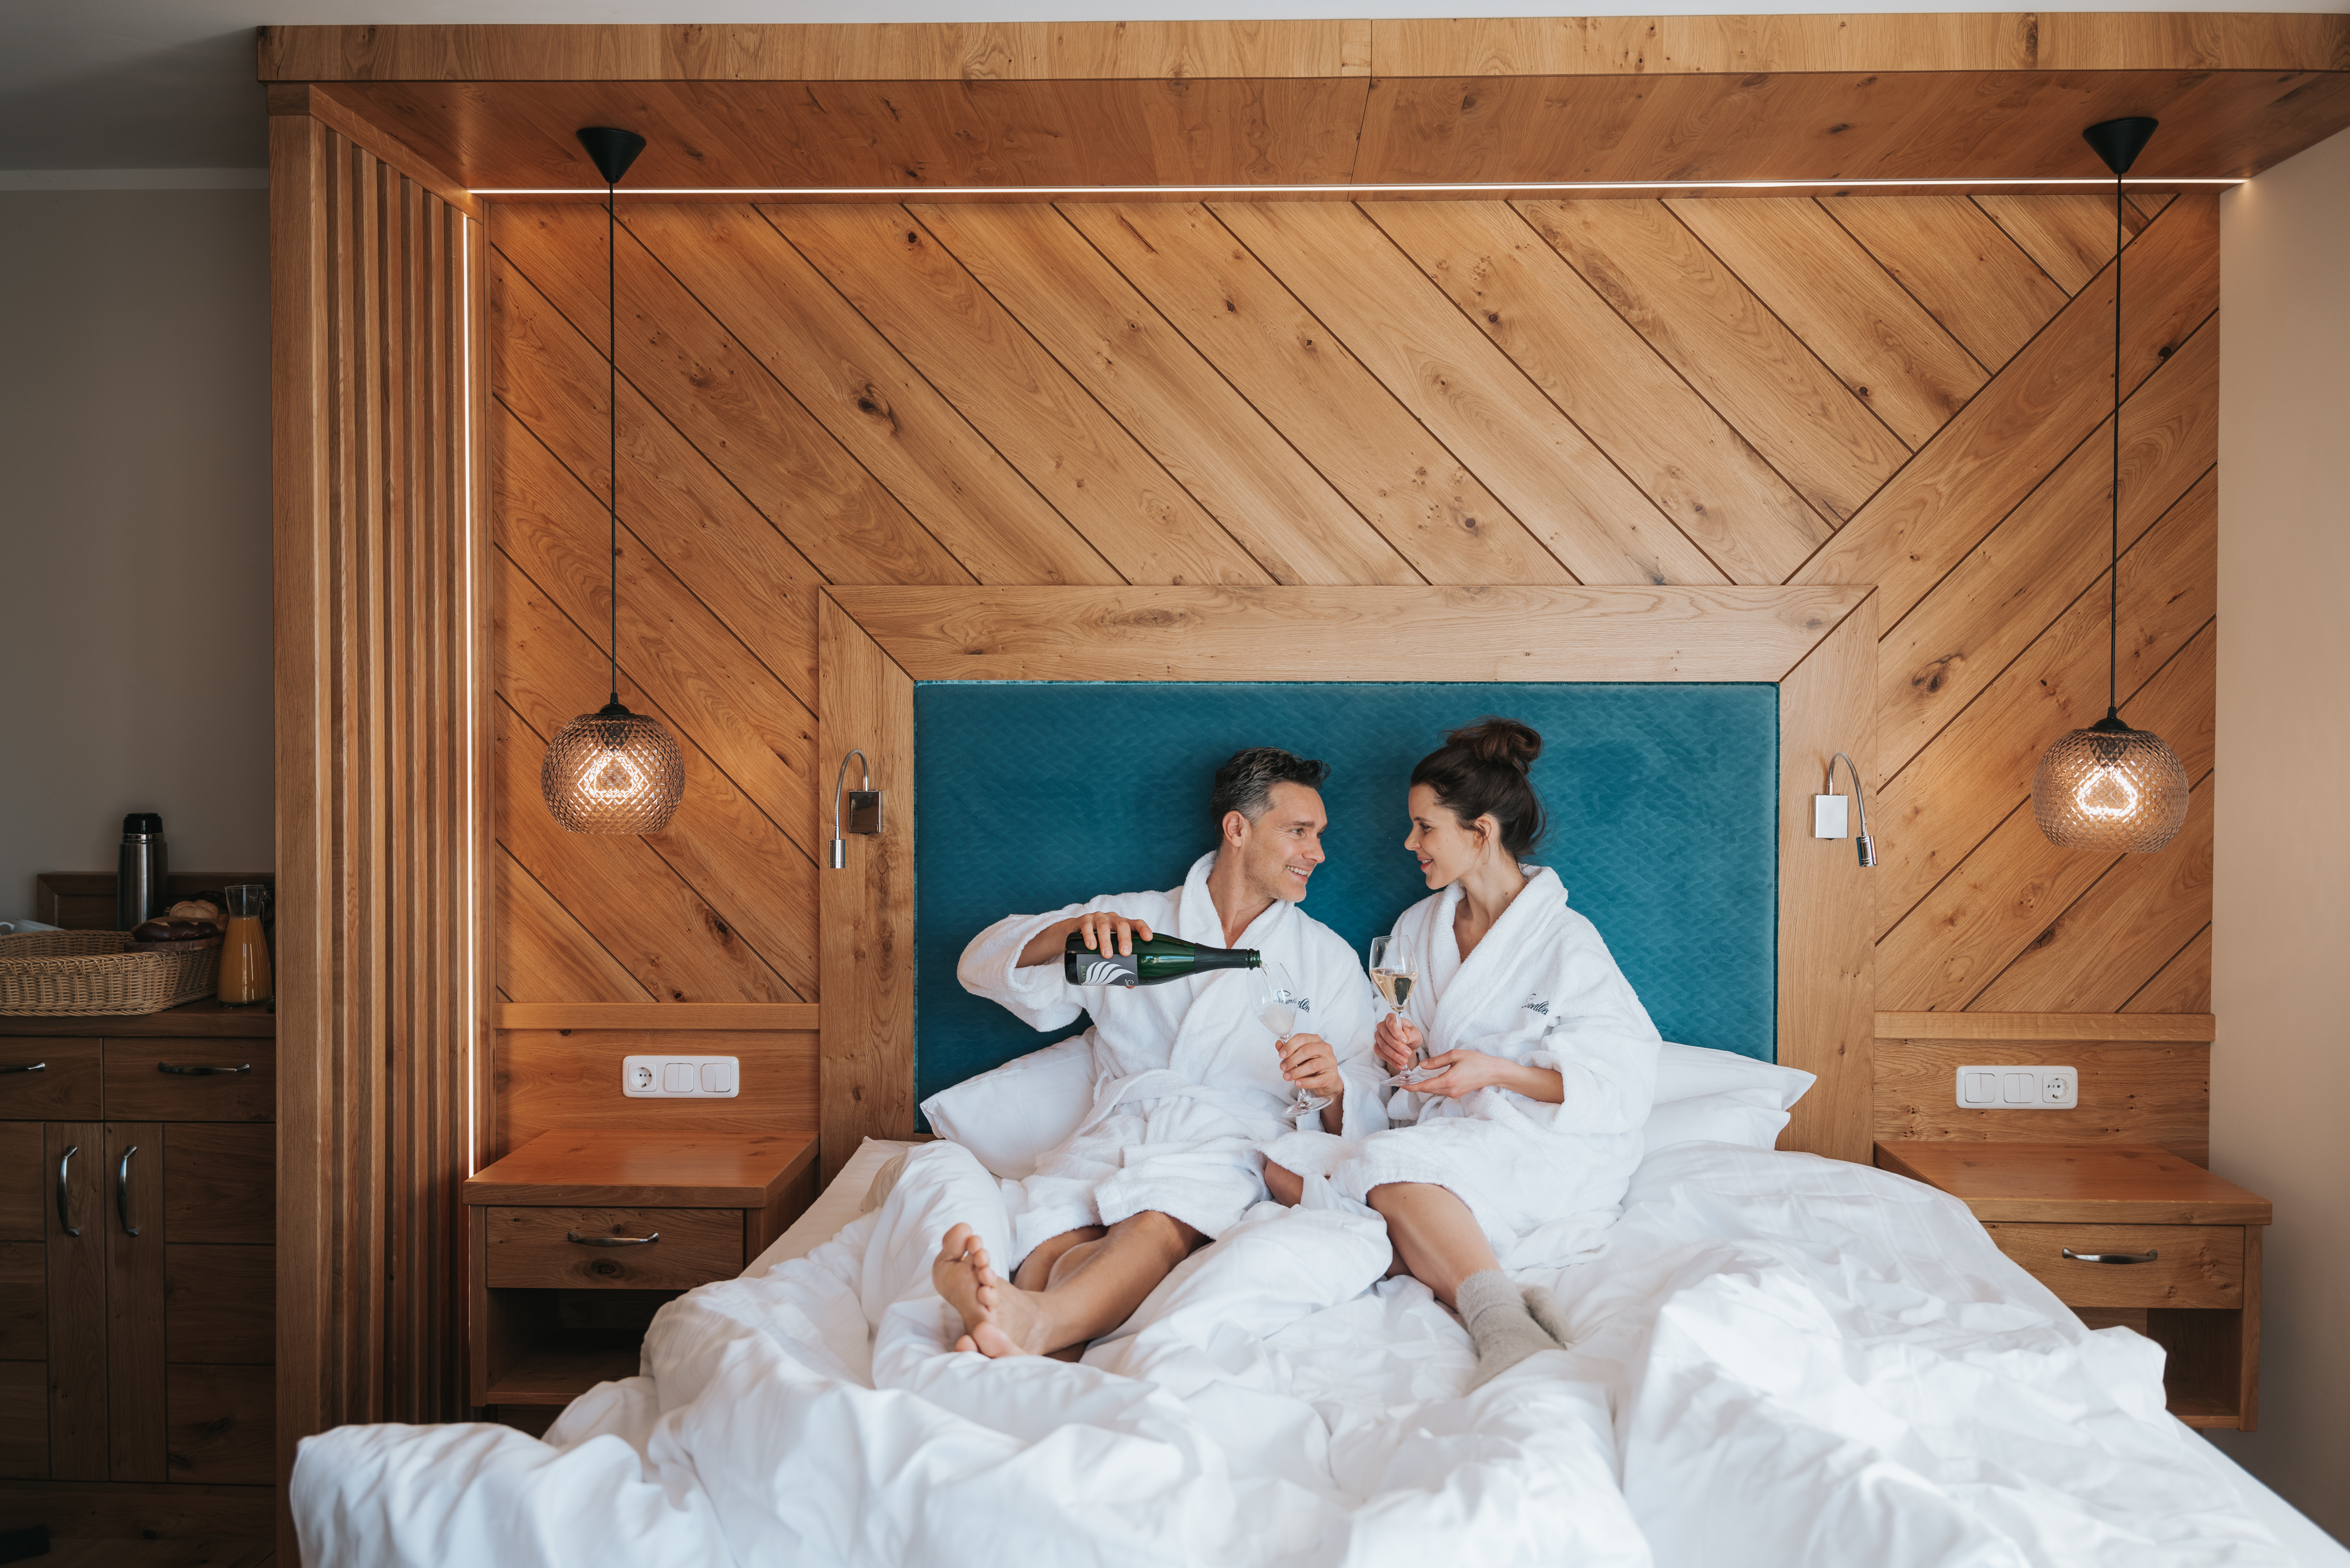 Hotel Seevilla - So viel Tradition wie Charme, Steiermark, Österreich